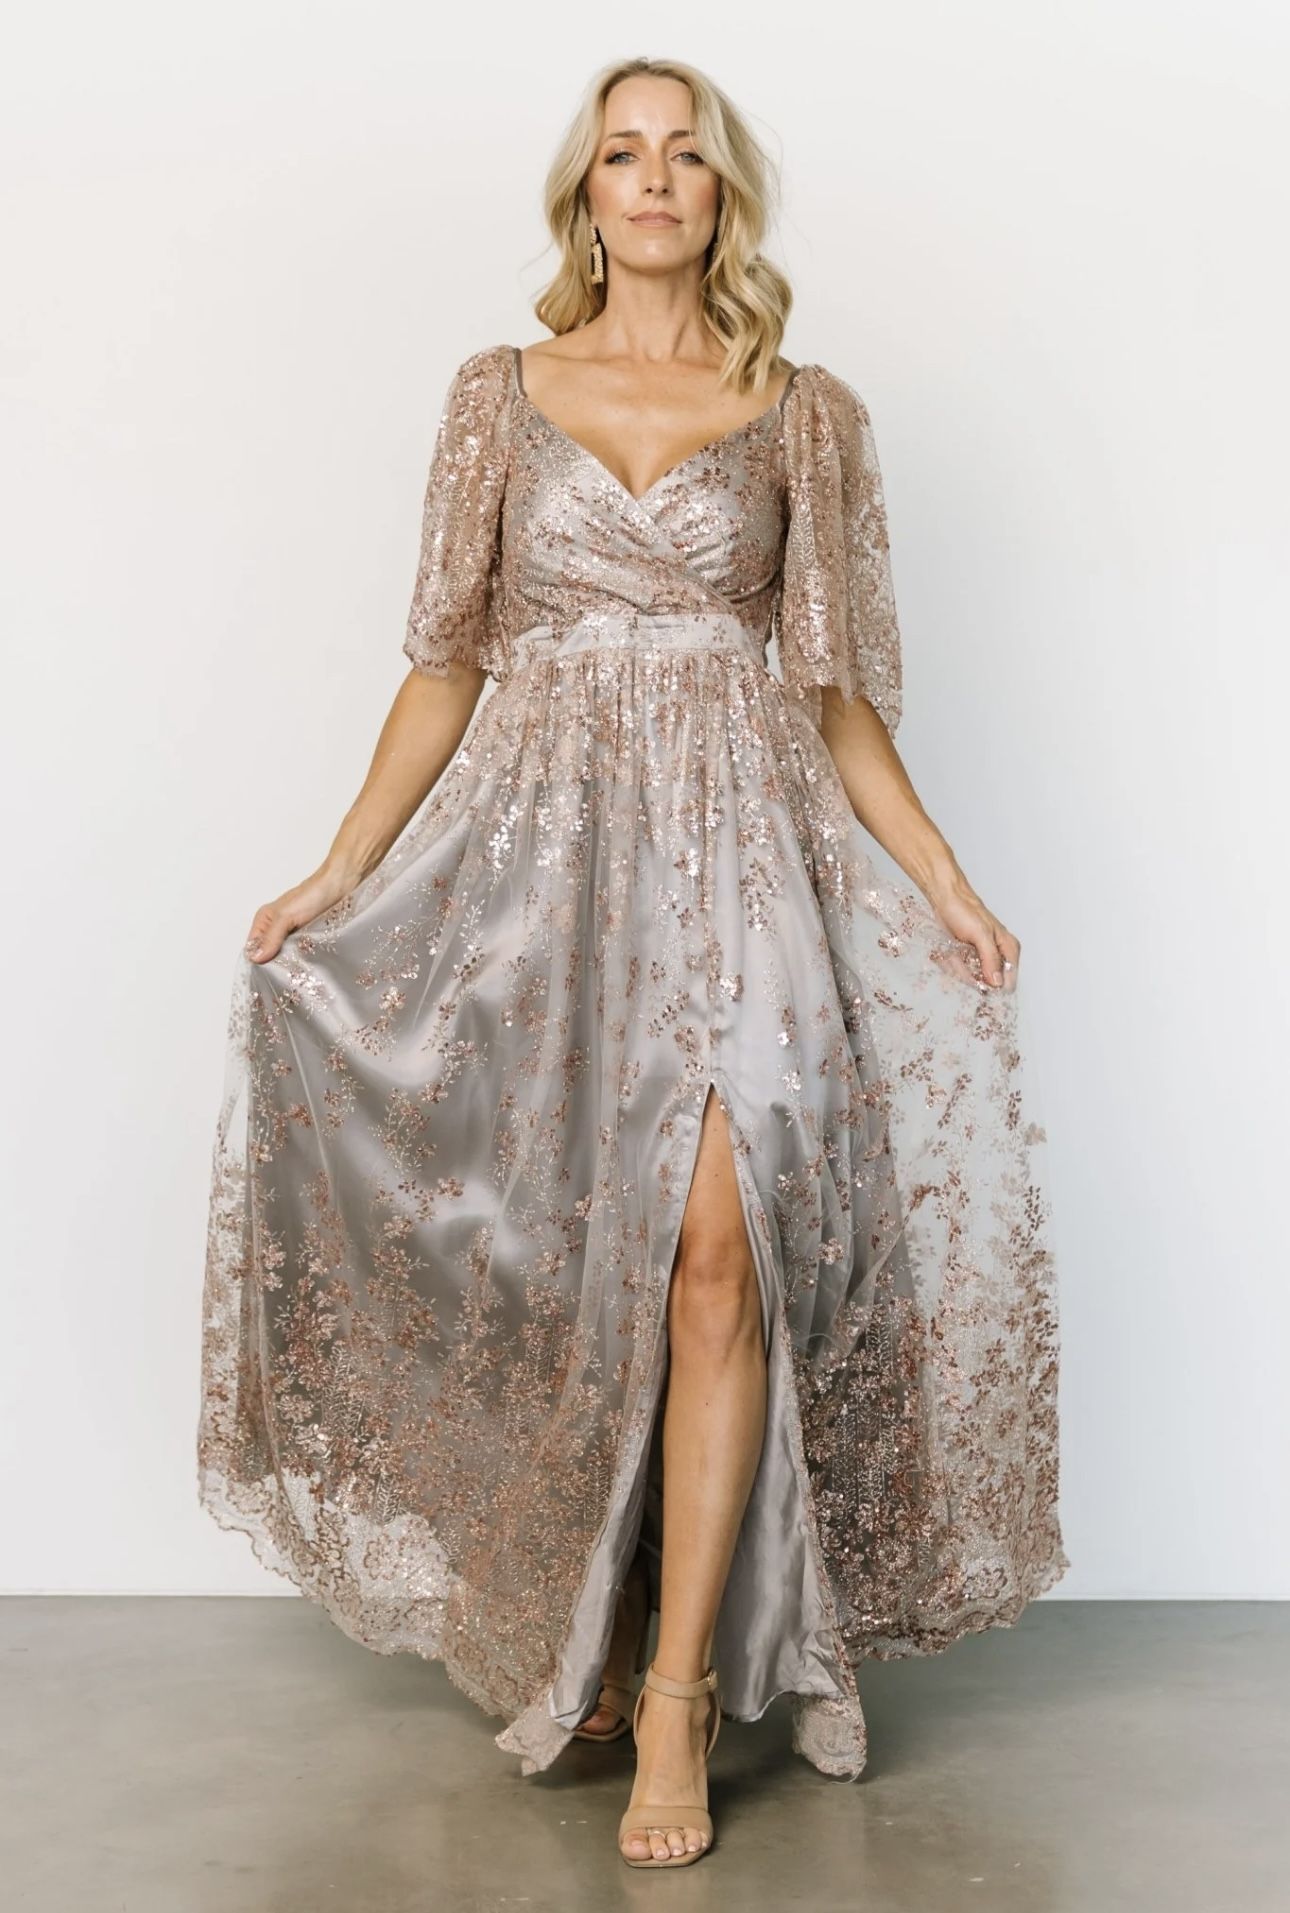 Glitter Maxi Dress - Small - BRAND NEW